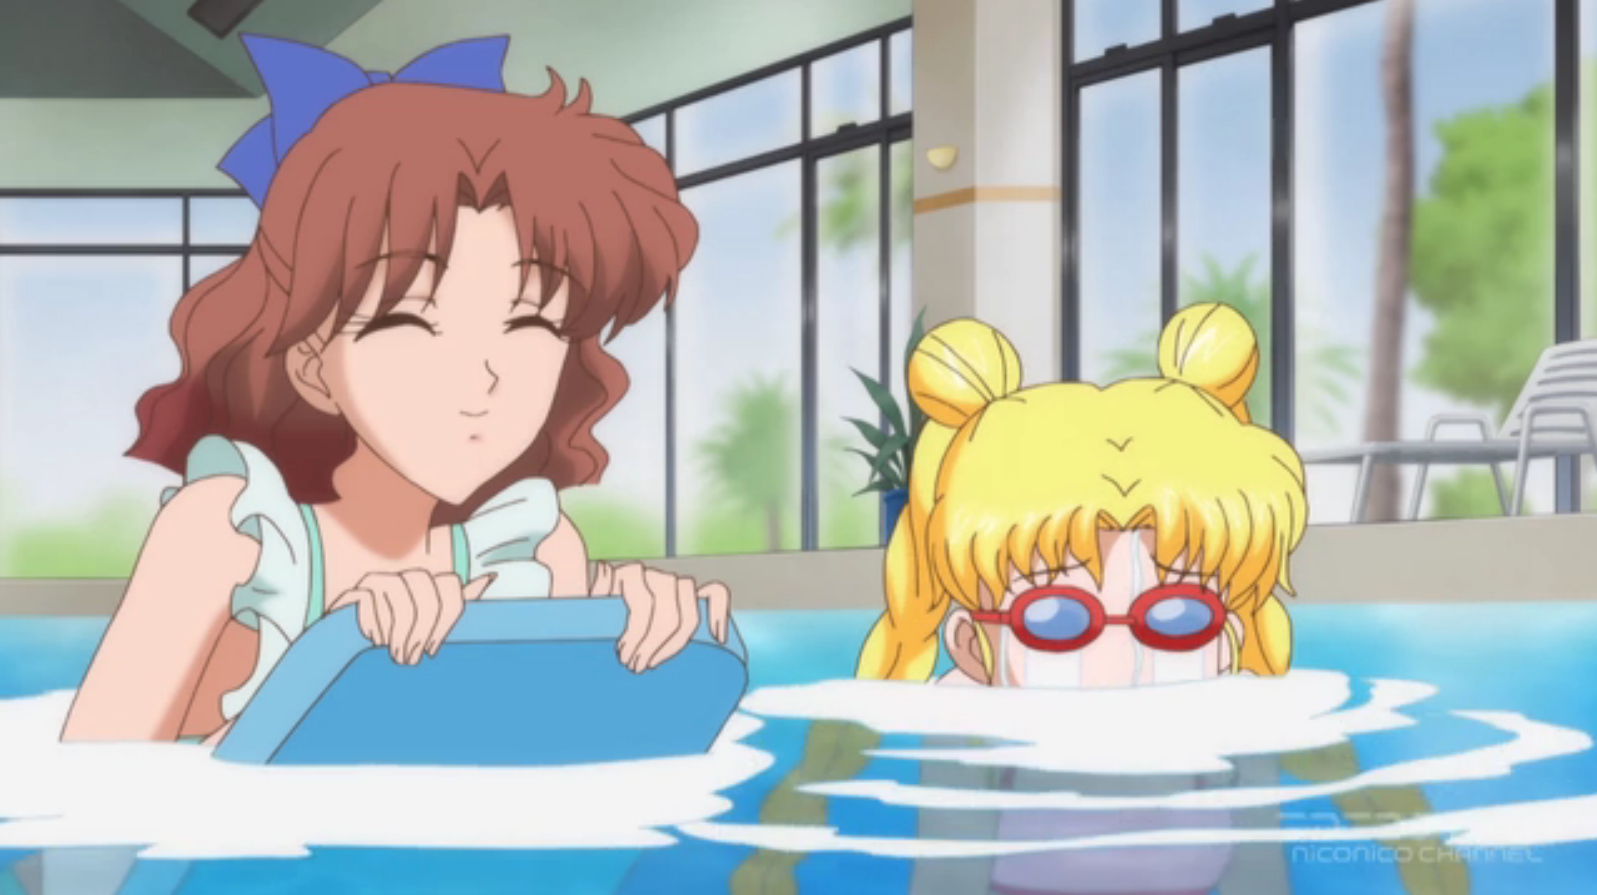 جميع حلقات انمي Sailor Moon Crystal مترجم بلوراي ادد انمي الانمي اون لاين Add Anime